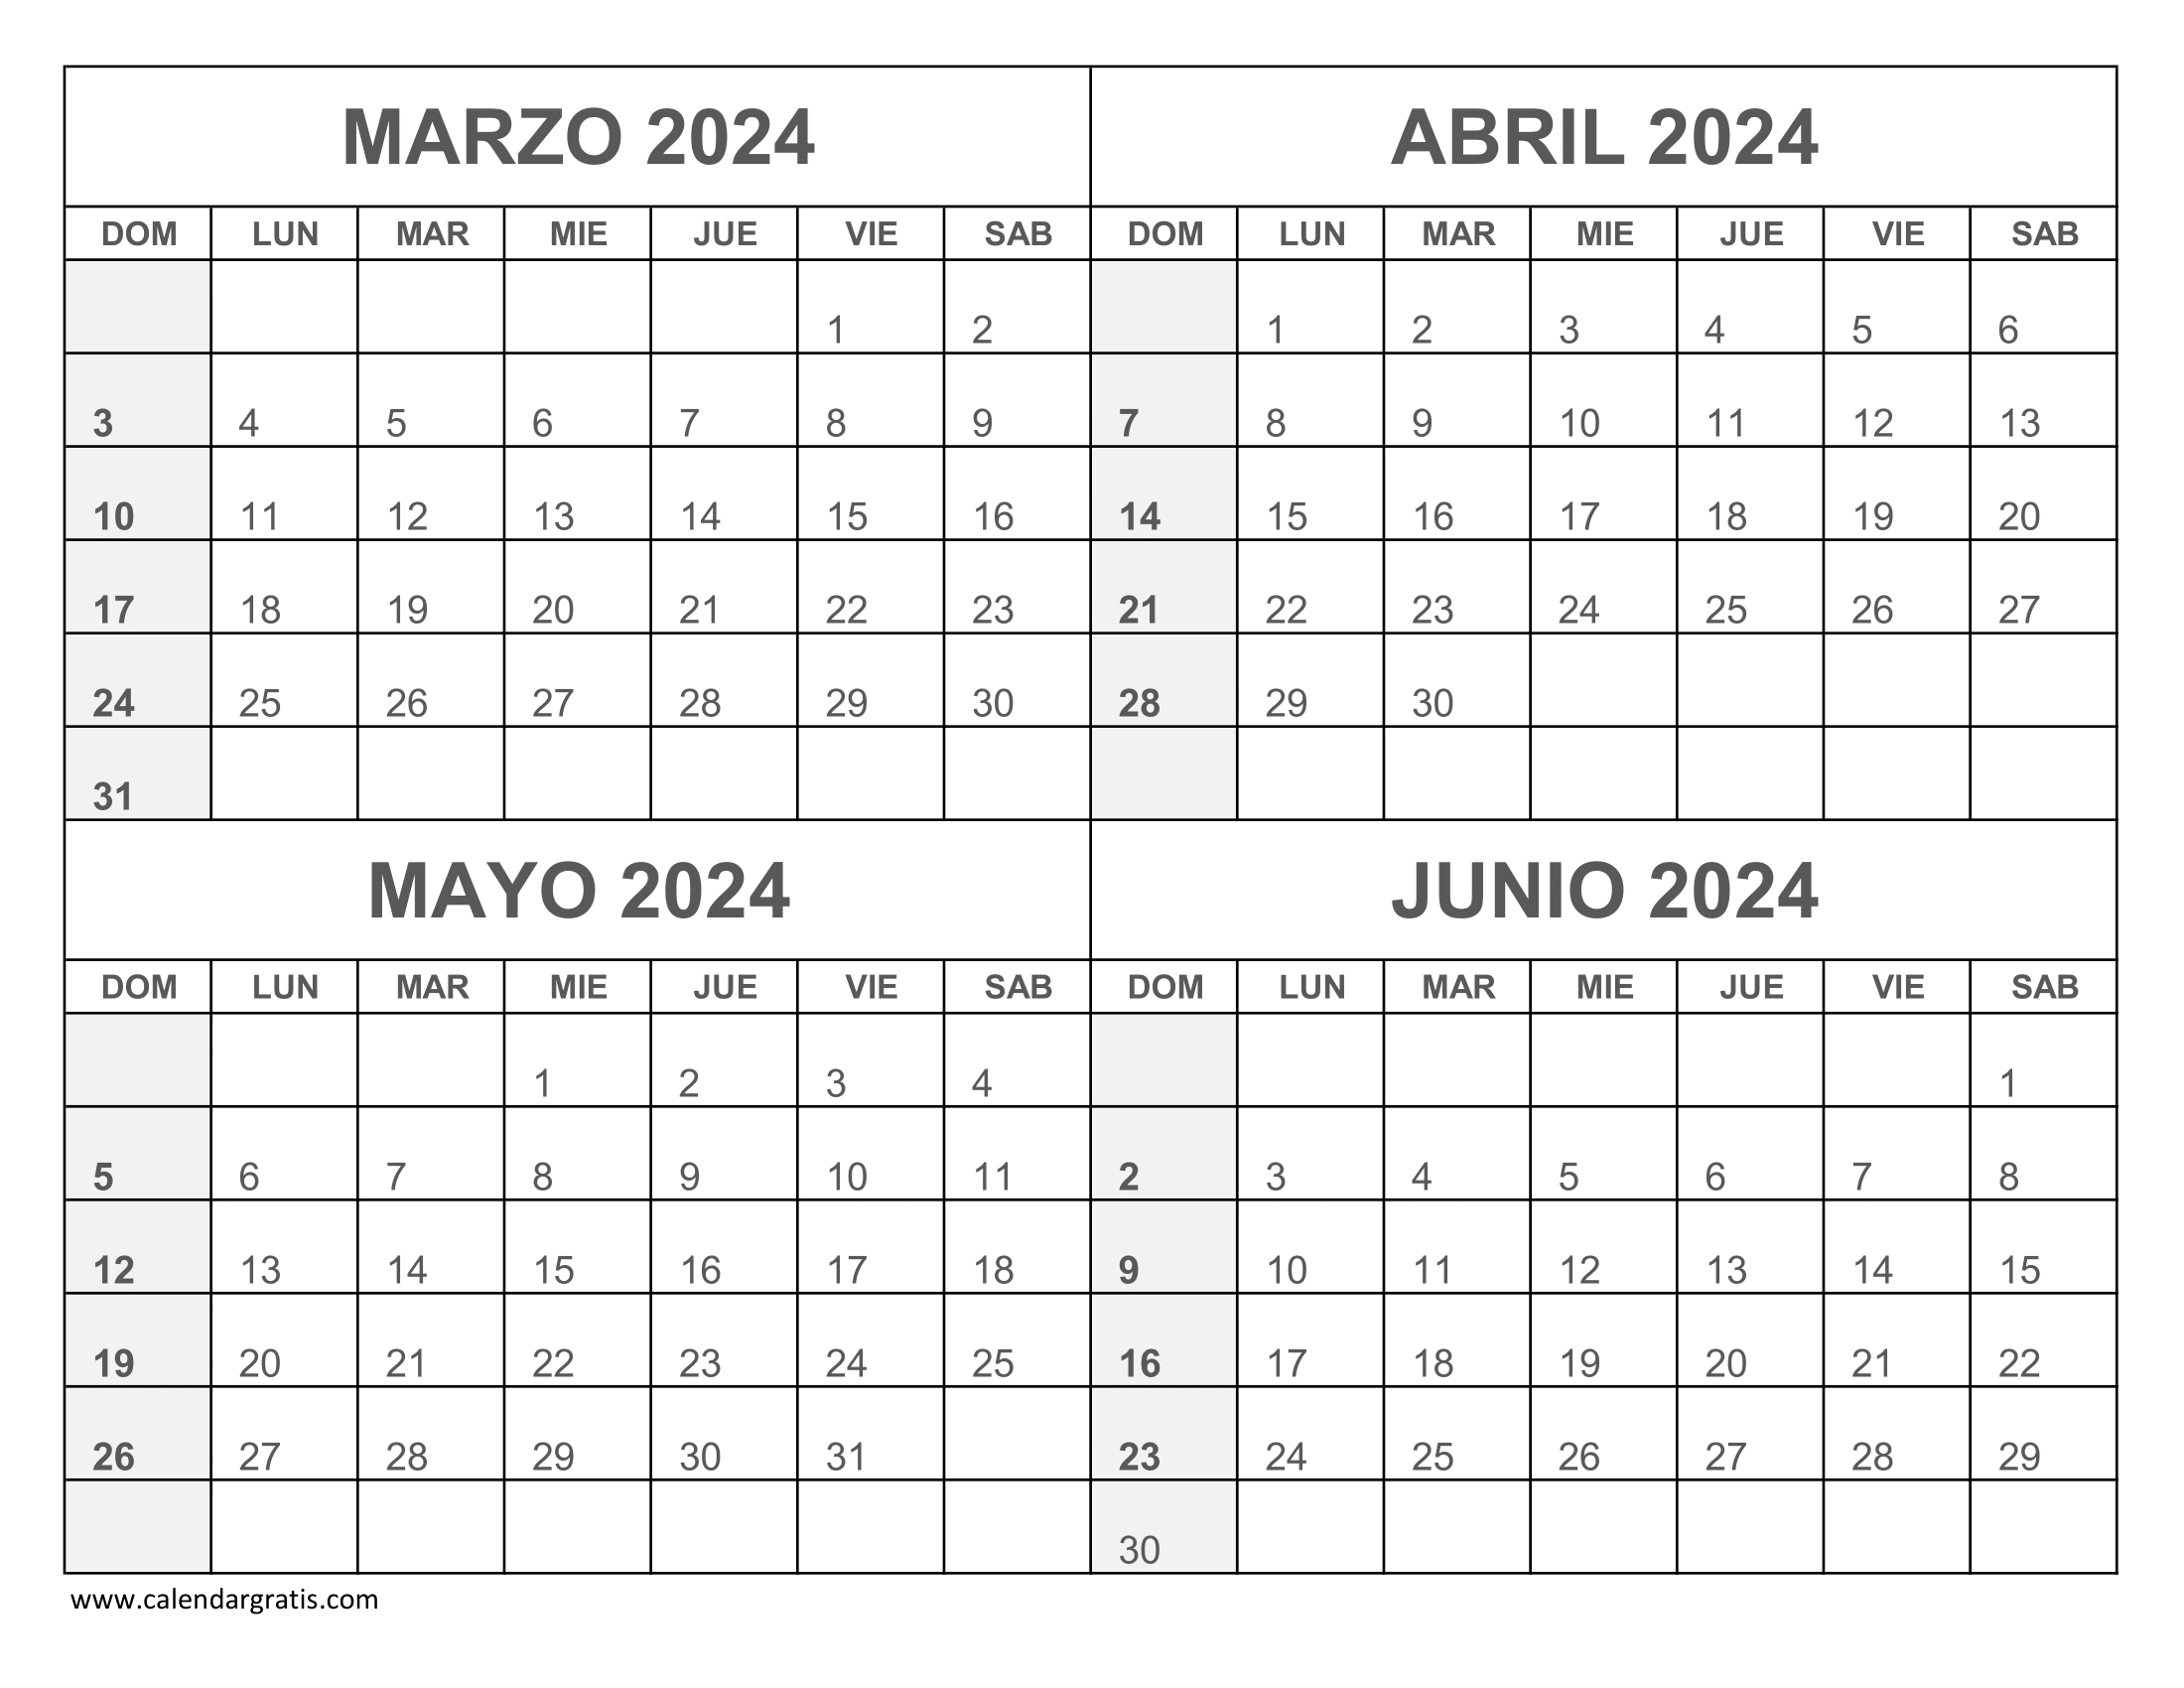 Calendario Marzo a Junio 2024